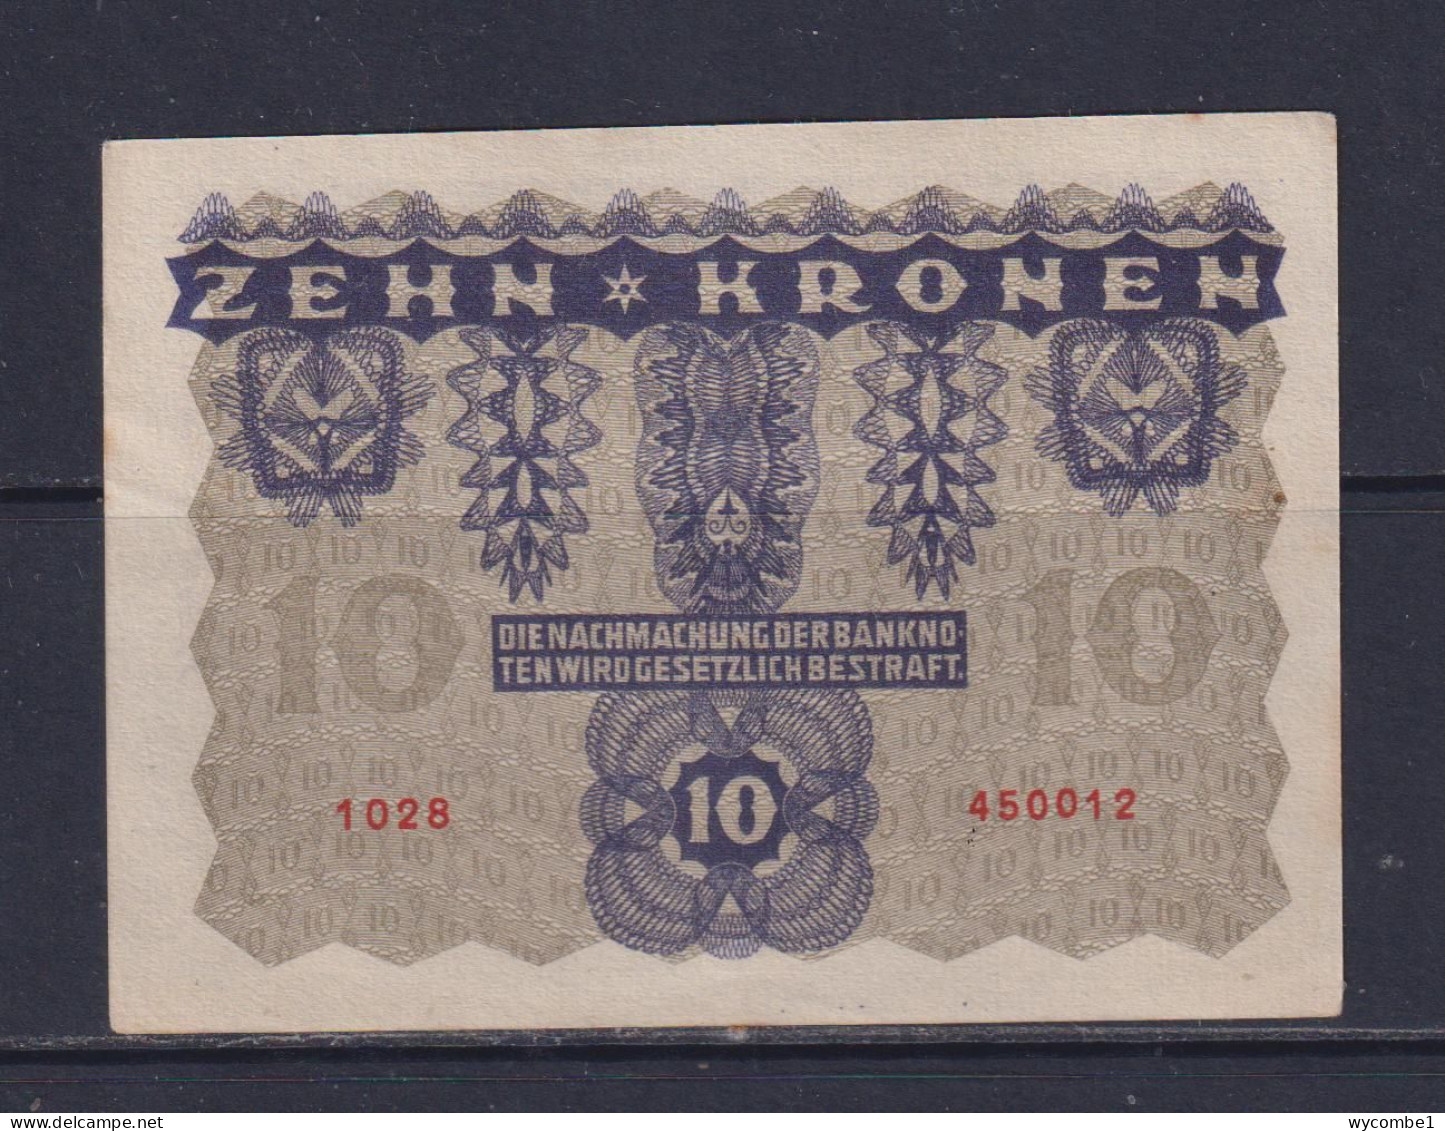 AUSTRIA - 1922 10 Kronen AUNC/XF Banknote - Oesterreich